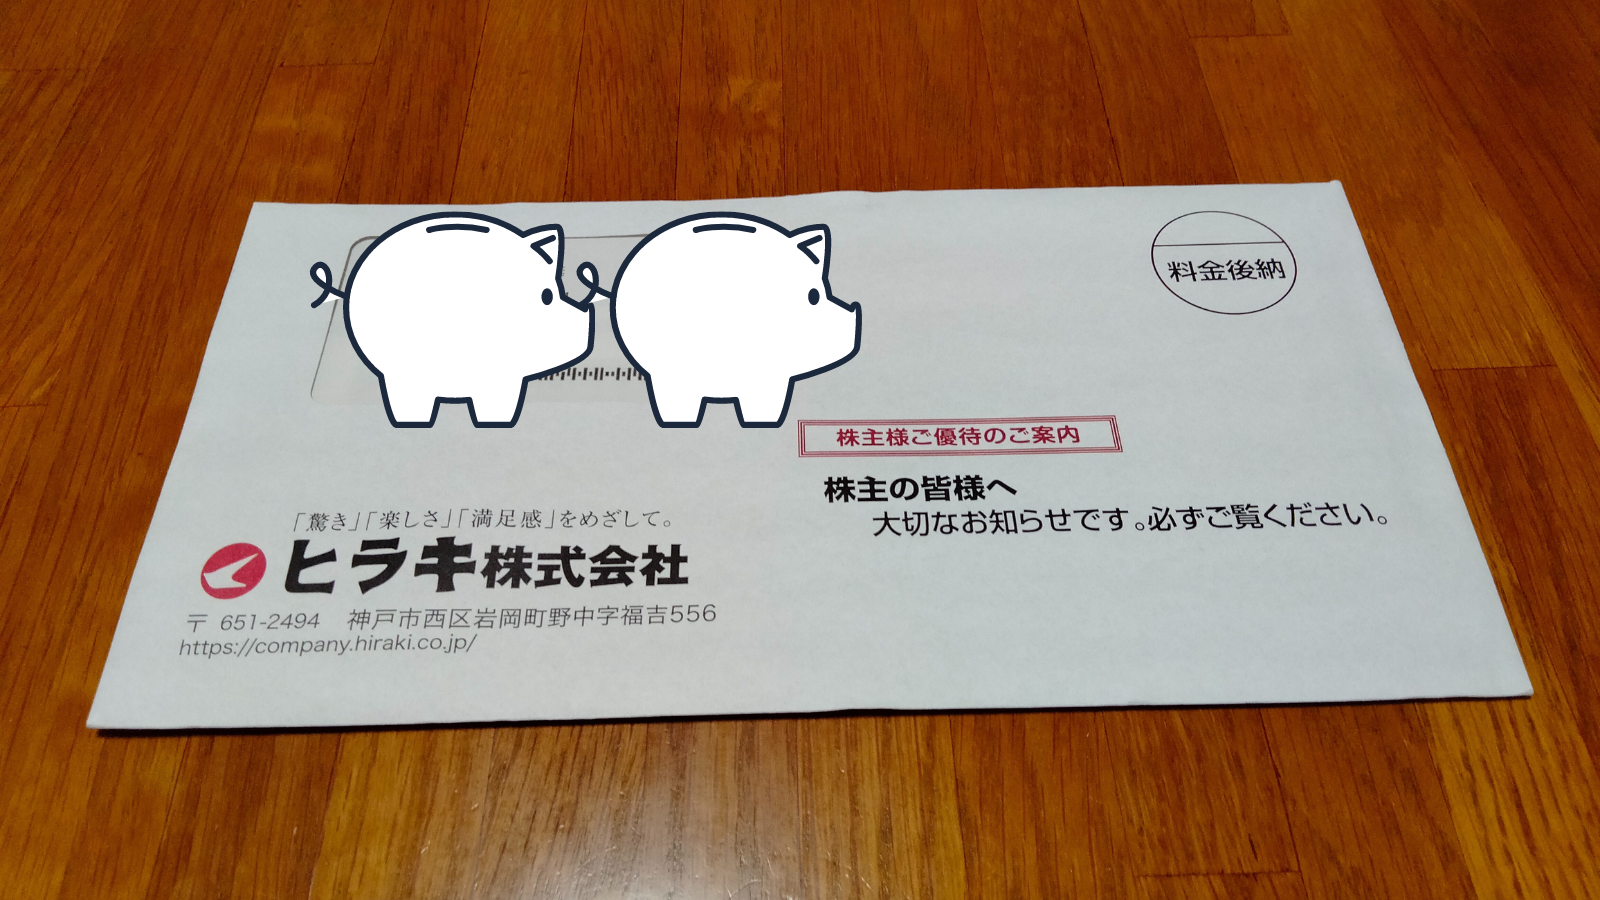 【3月優待】ヒラキ株式会社から株主優待(お買物券)が届きました